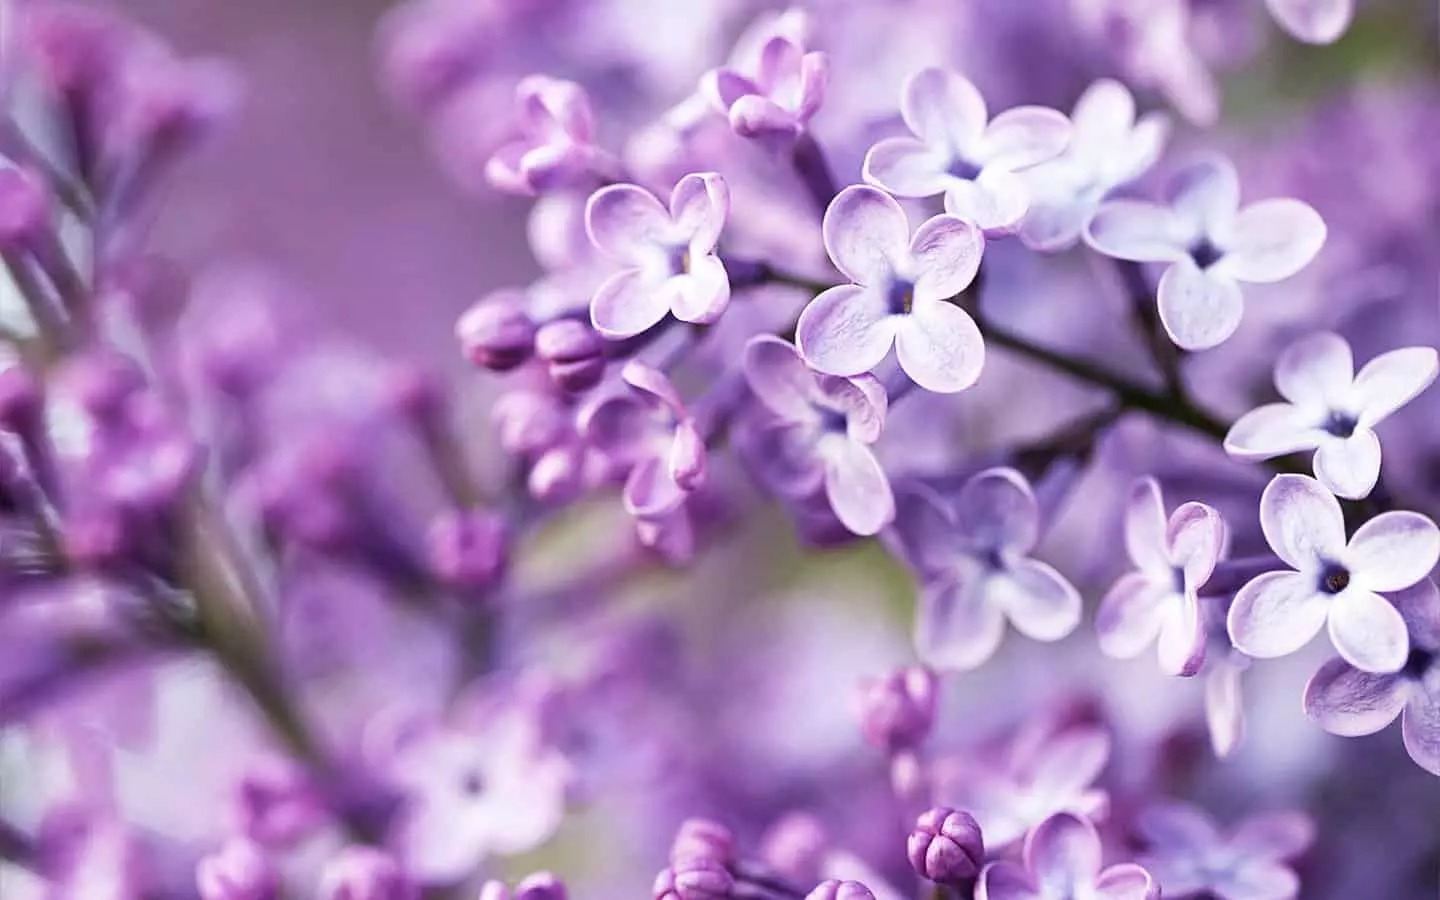 Lilac رەڭلىرى ئۇنىڭ گۈزەللىكى بىلەن تەسىرلىك